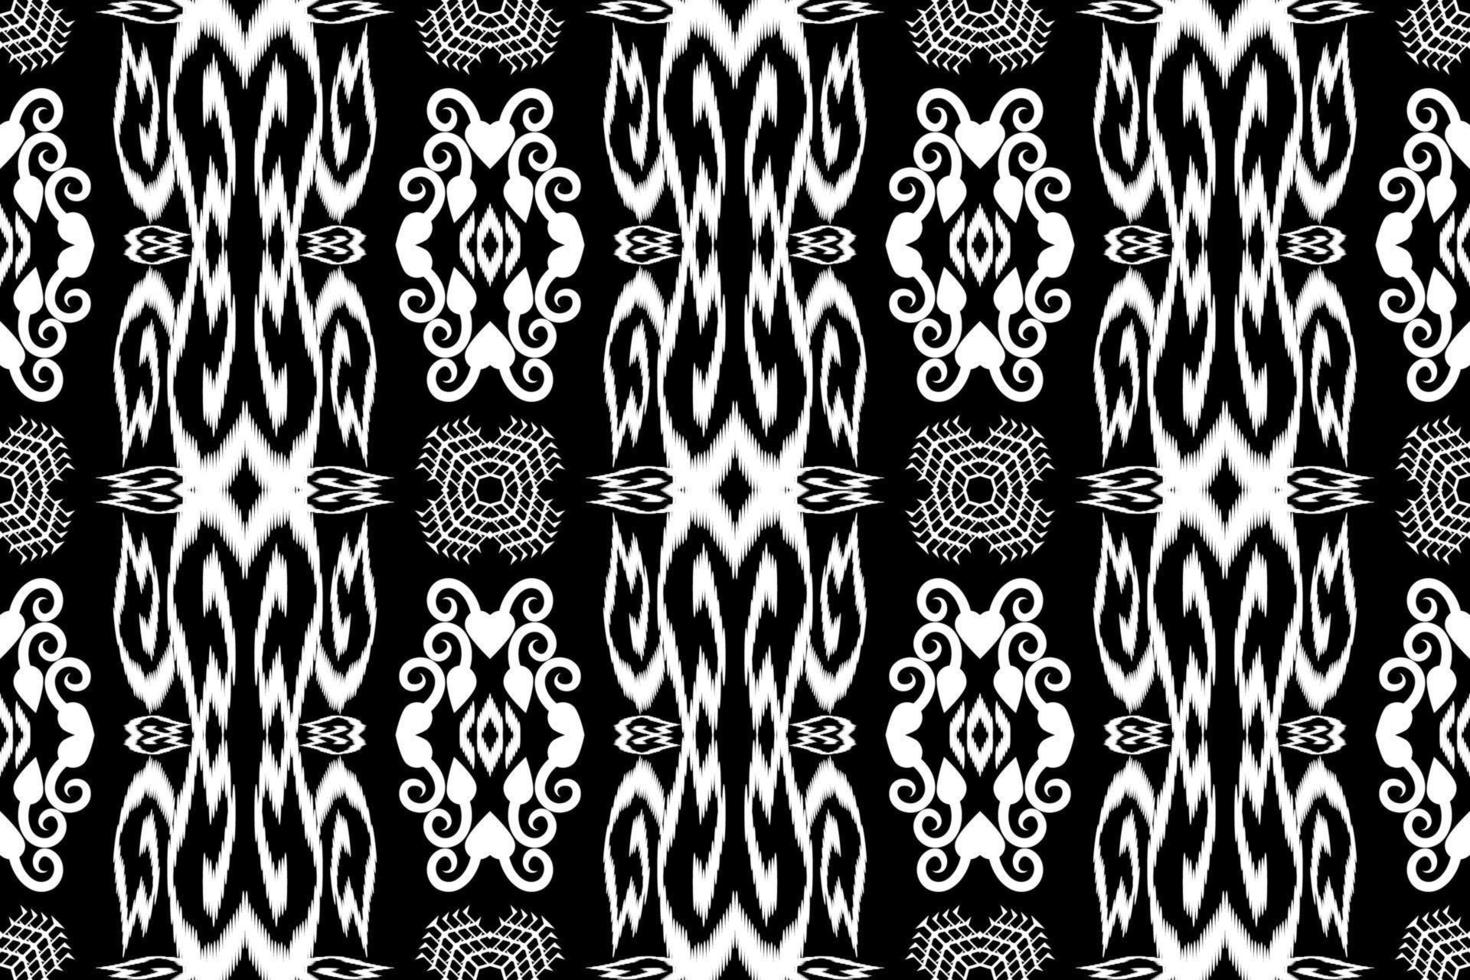 belo bordado.geométrico padrão oriental étnico estilo tradicional.asteca,resumo,vetor,illustration.design para textura,tecido,vestuário,embrulho,moda,tapete,impressão. vetor